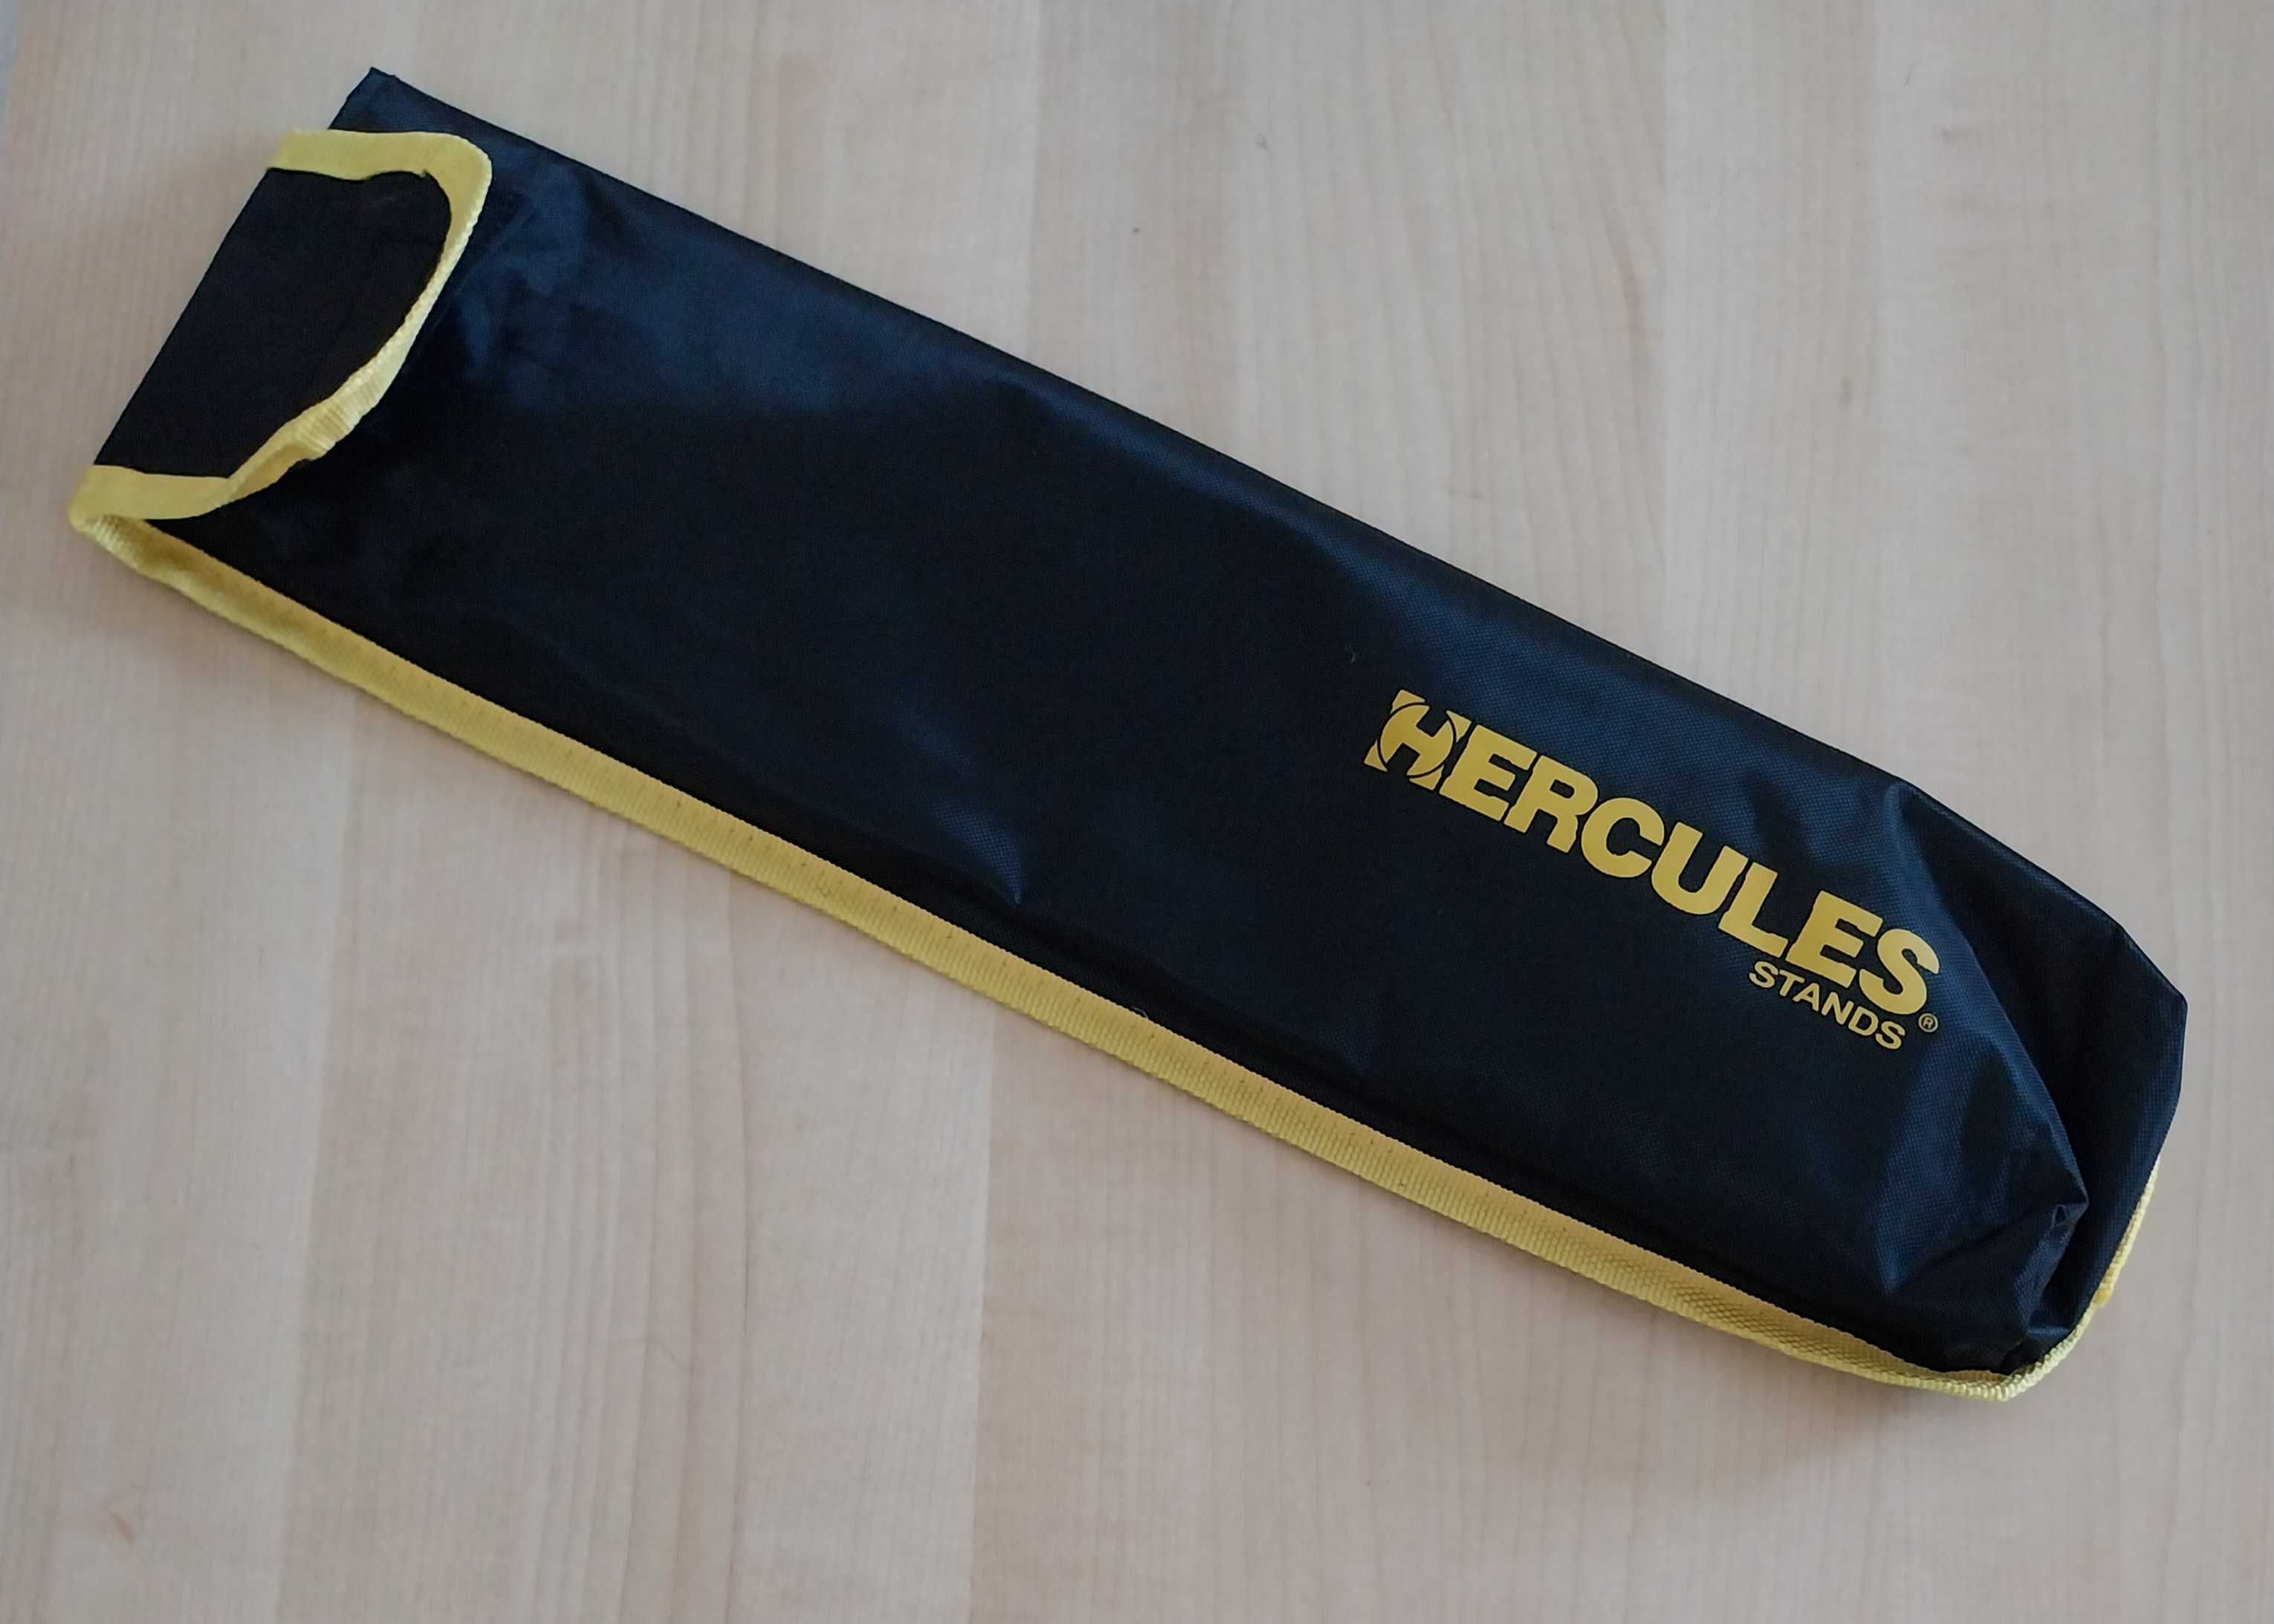 Estante Articulada Dobrável Partituras com saco - Hercules (Novo)